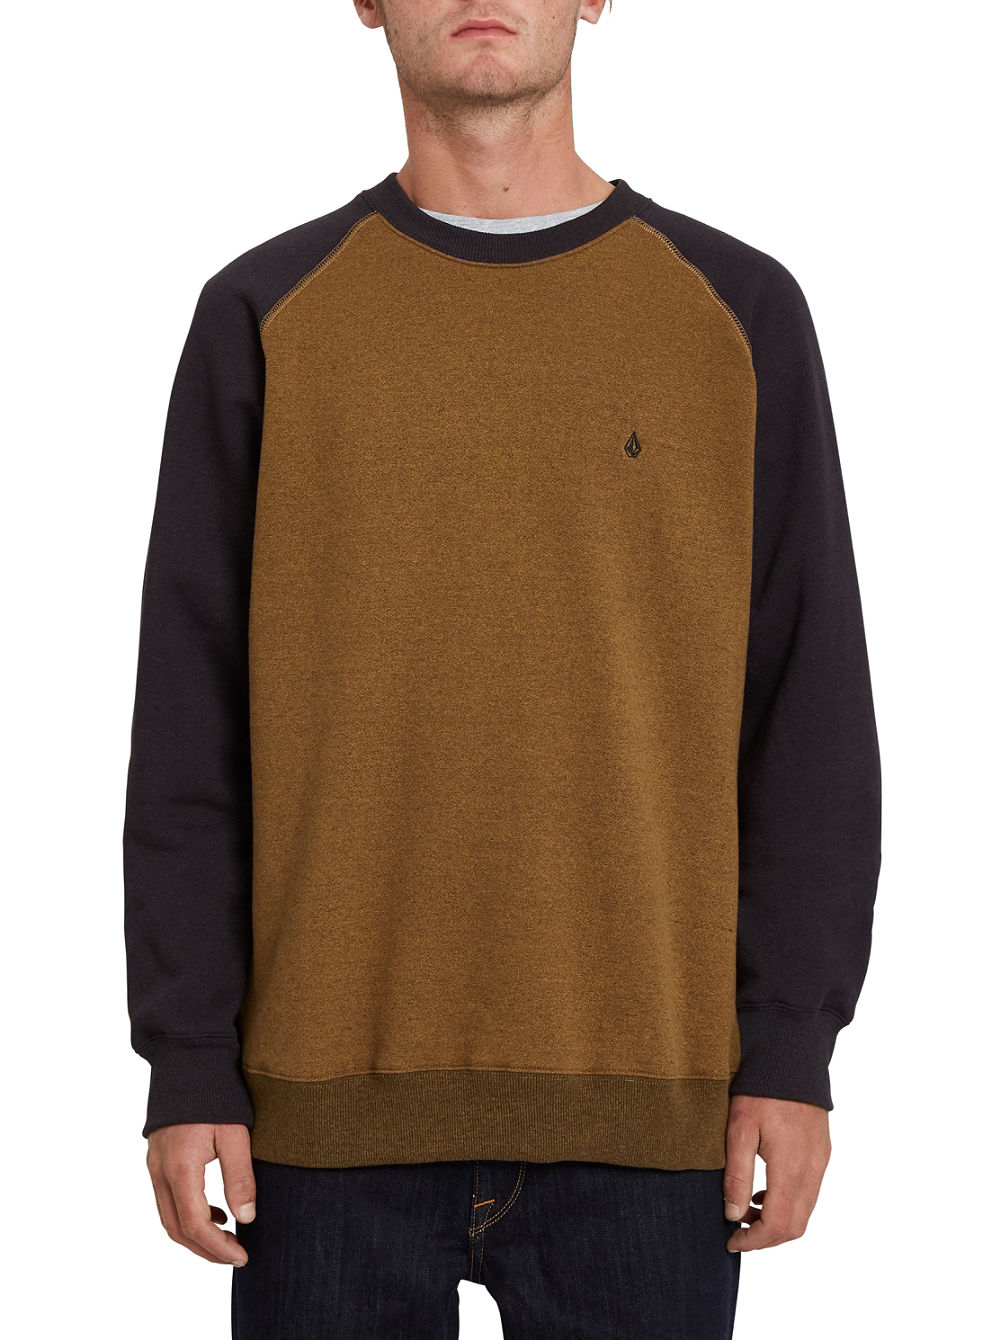 Homak Crew Sweater